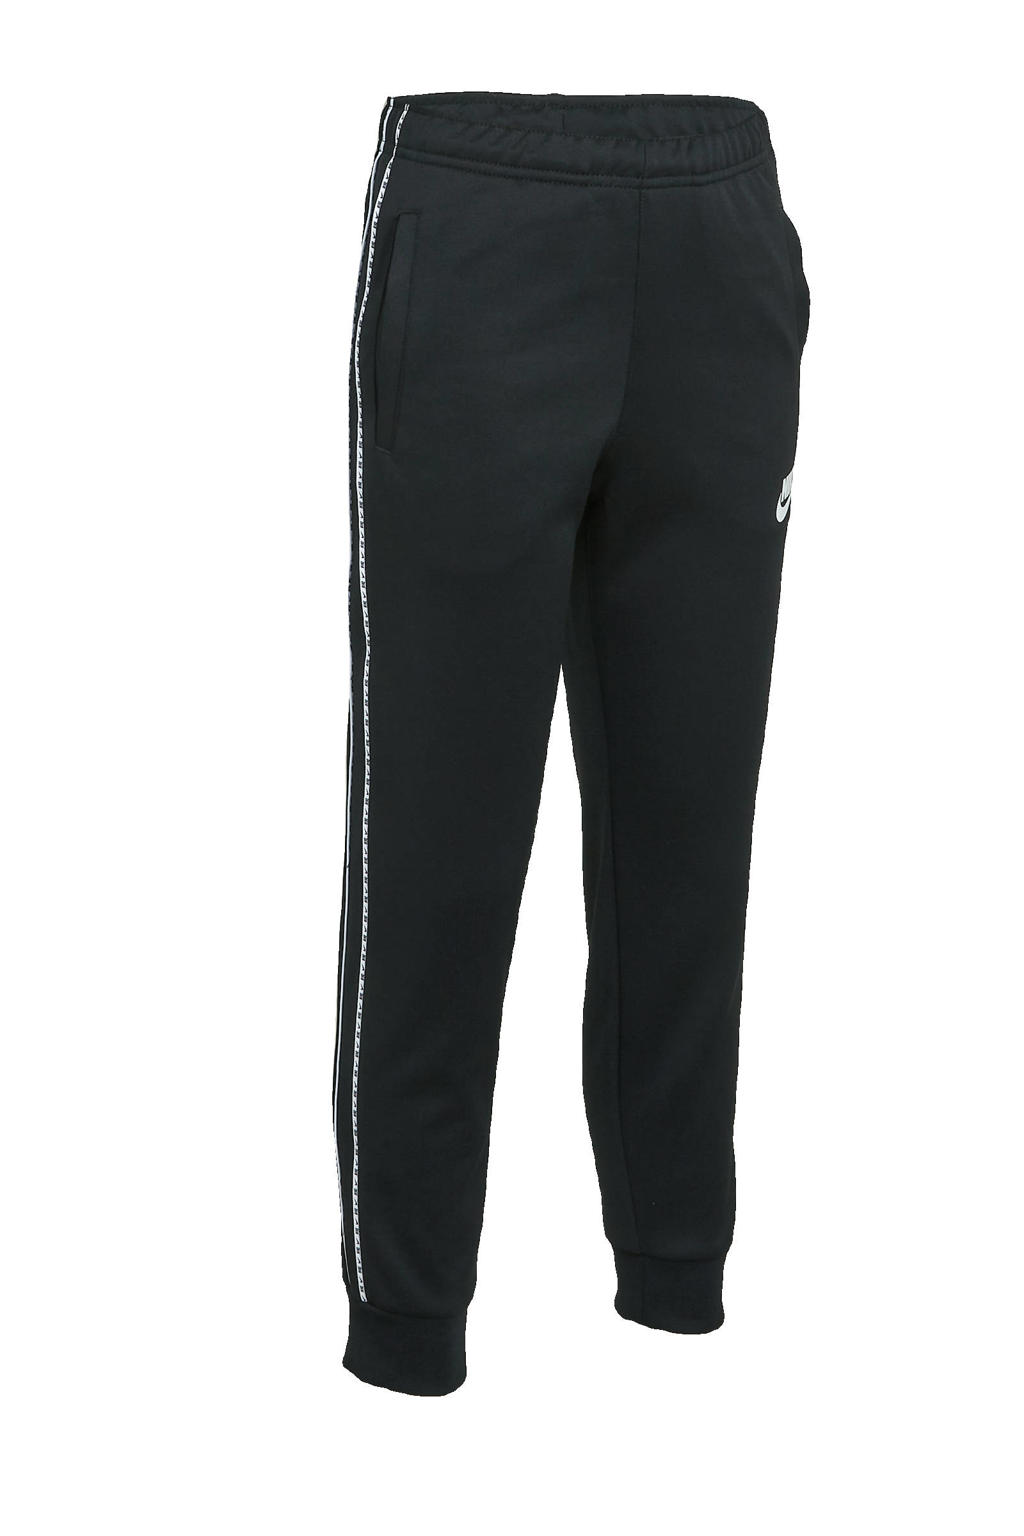 Zwart en witte jongens Nike regular fit joggingbroek van polyester met elastische tailleband met koord en logo dessin